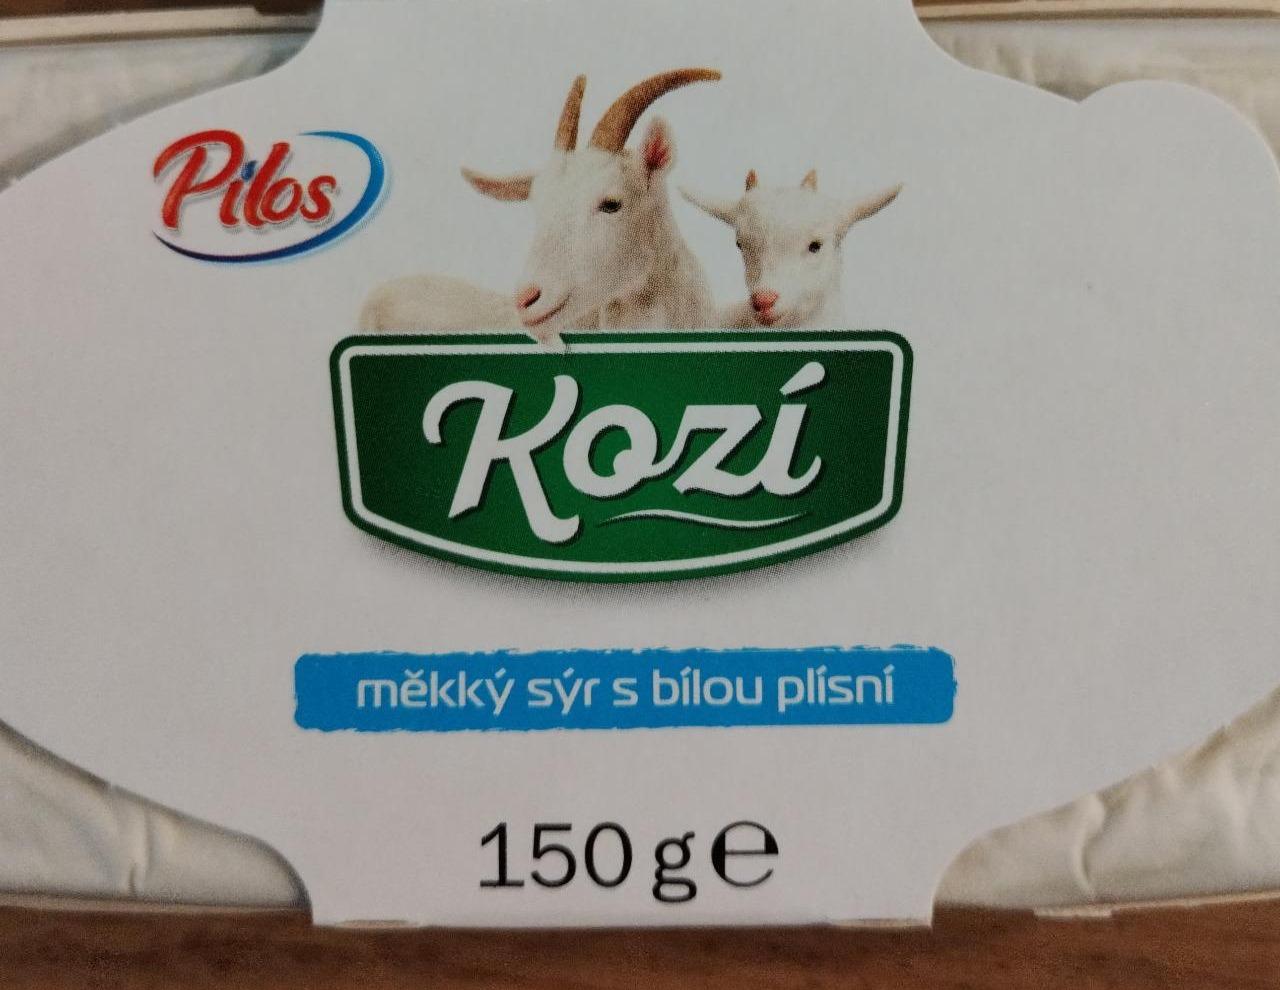 Fotografie - Kozí měkký sýr s bílou plísní Pilos